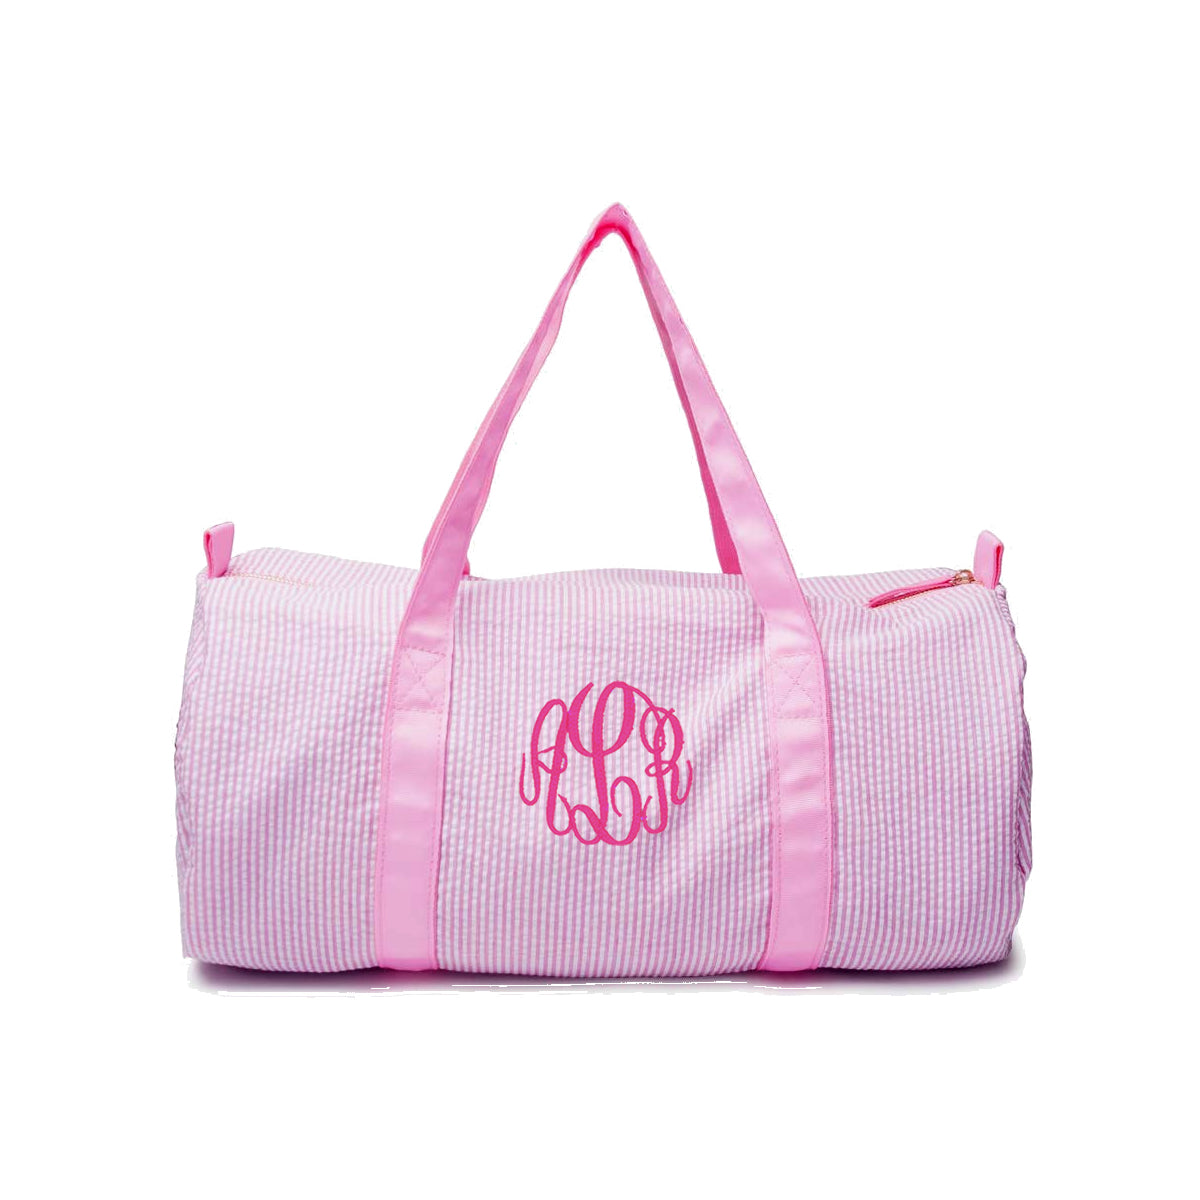 pink seersucker duffel bag with monogram for kids